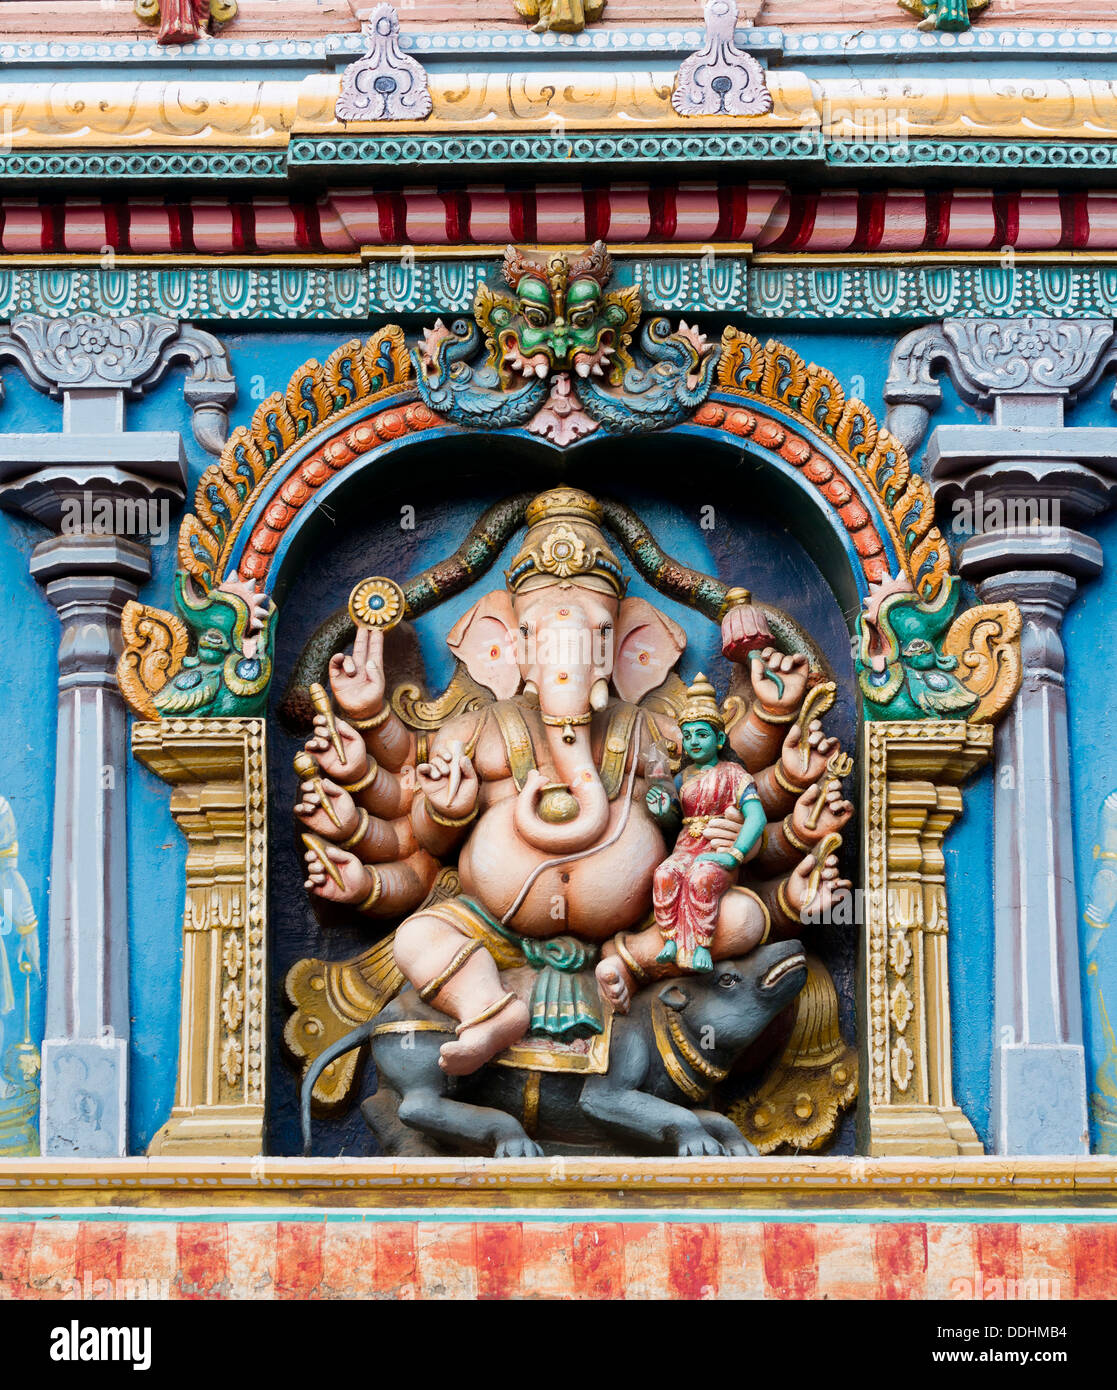 Hindu Gott Ganesha Oder Ganpati Der Elefantenkopfige Gott In Einer Darstellung Mit Zehn Armen Auf Einer Tempelwand Meenakshi Amman Tempel Stockfotografie Alamy